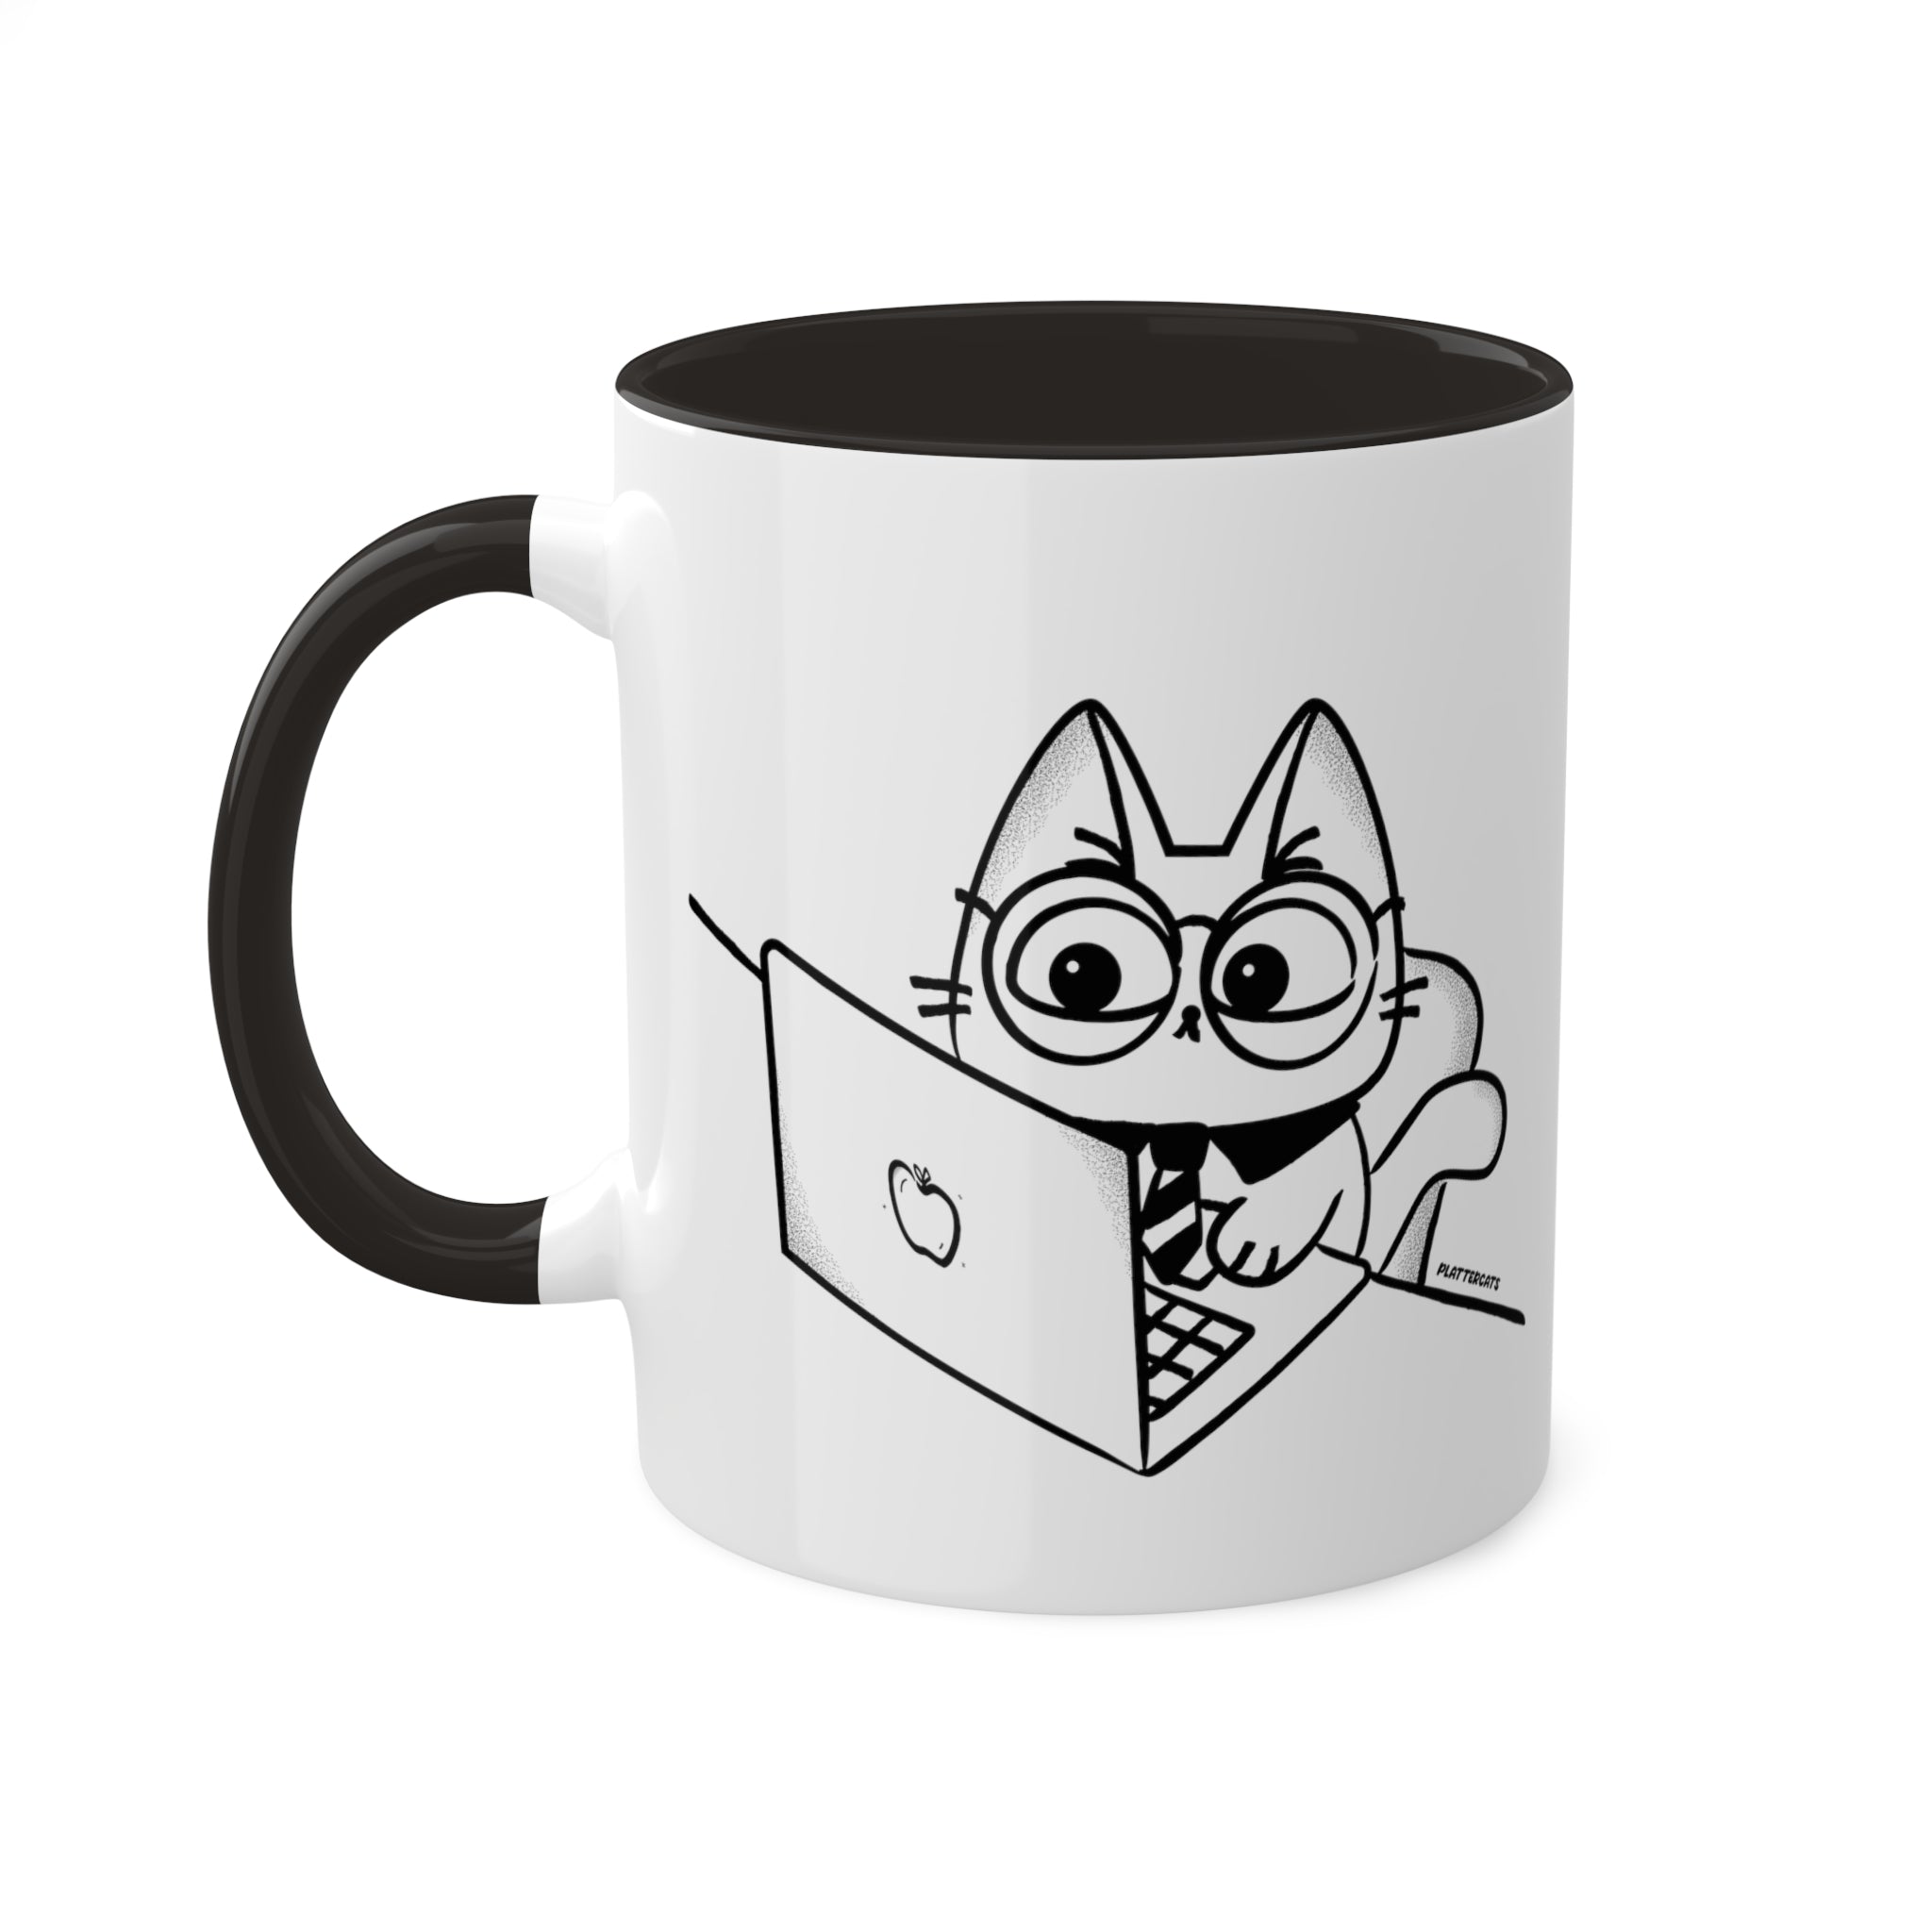 Grumpy Business Cat - Cute Cat Mug - PlatterCats Creative